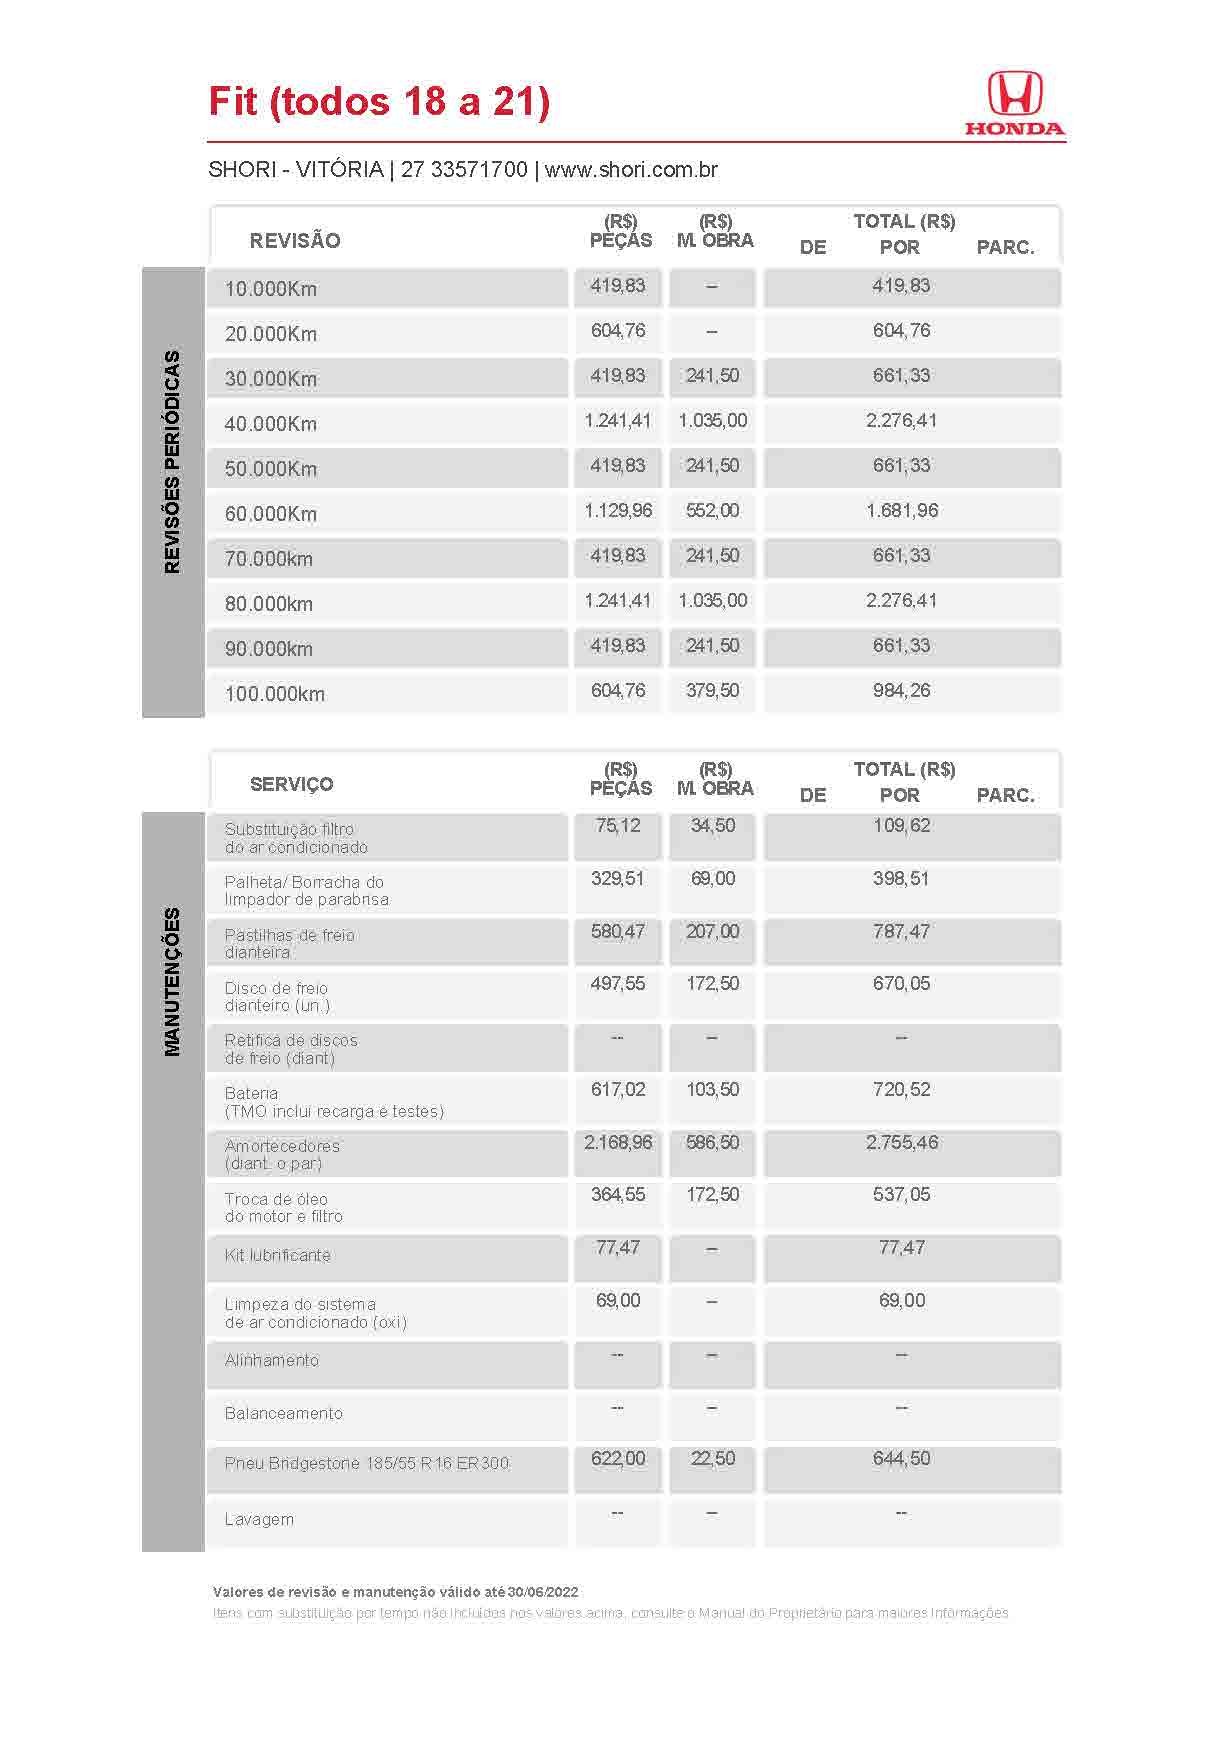 Honda Shori Tabela de Revisão fit todos 18 a 21 2022 06 30